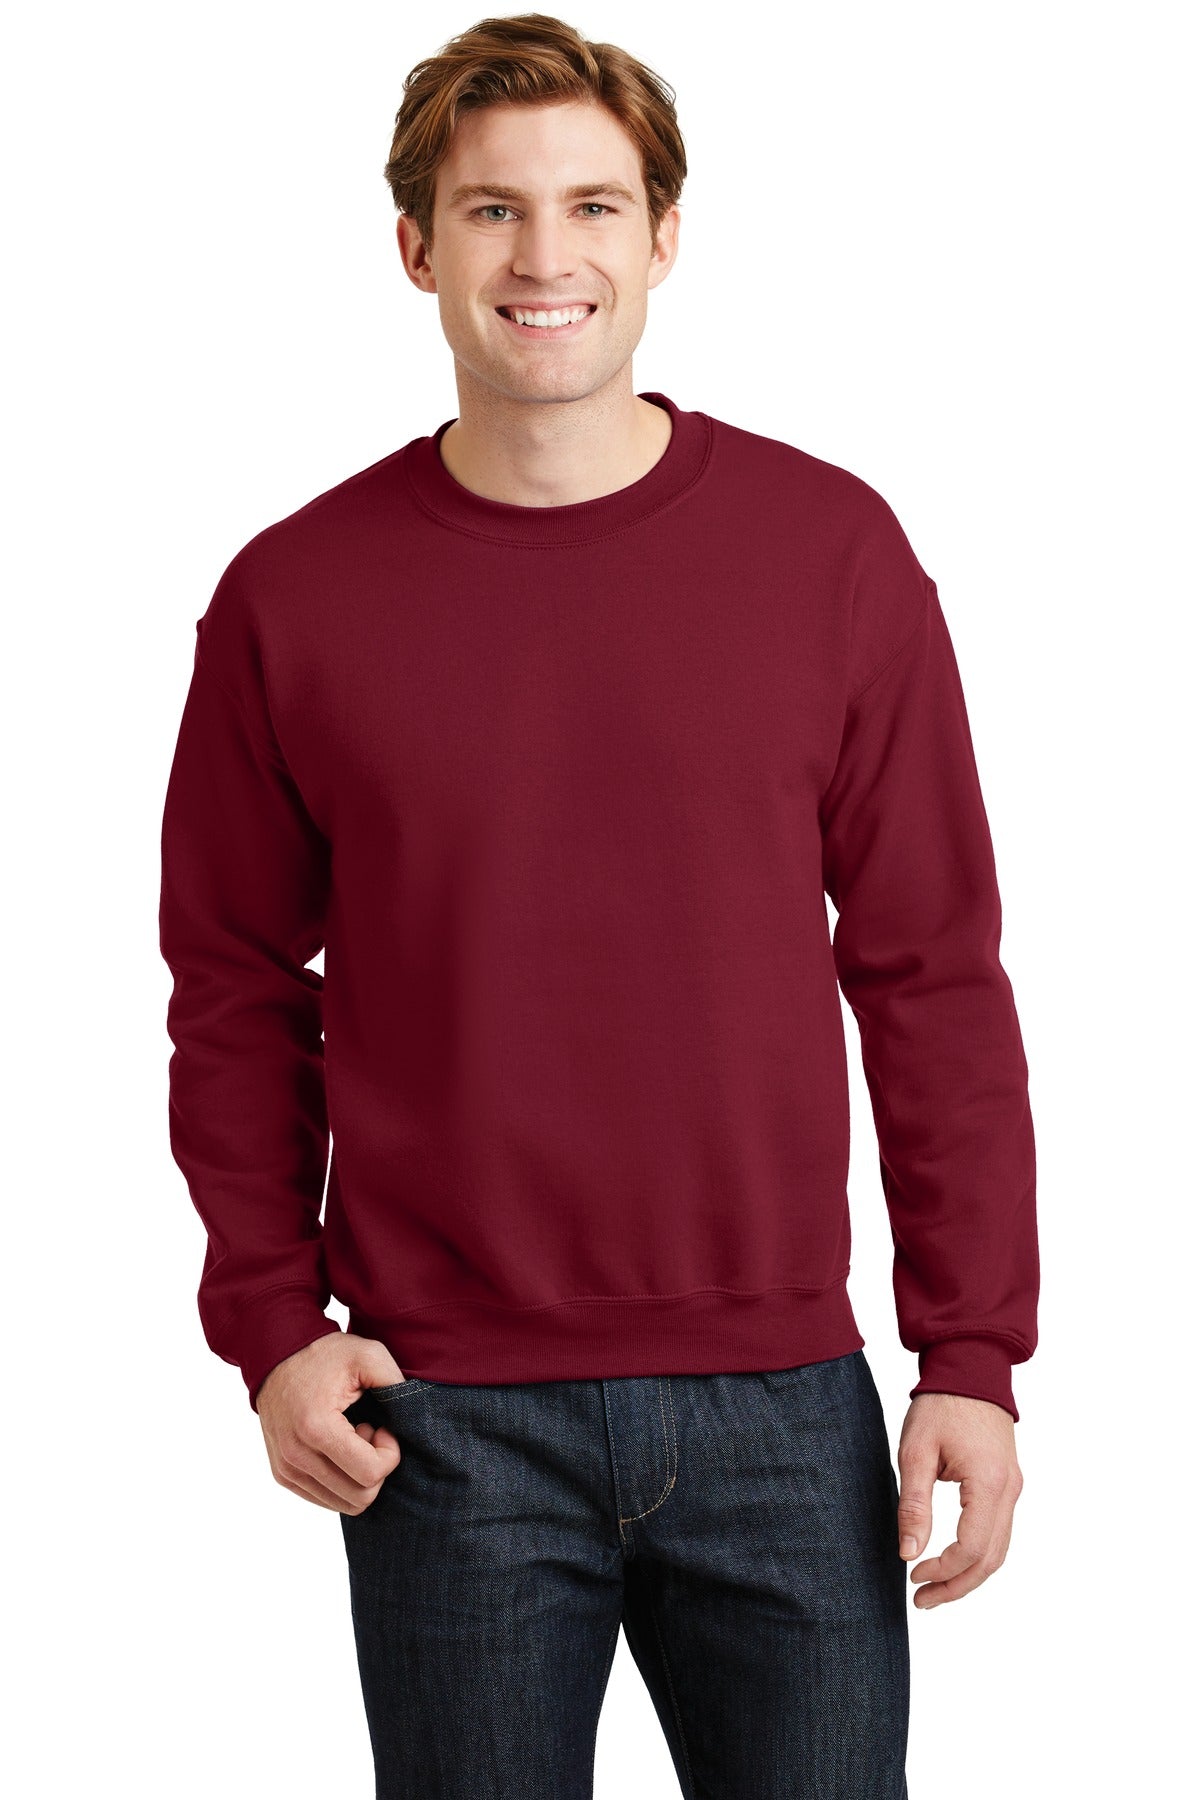 Sweatshirts/Fleece Cardinal Red Gildan